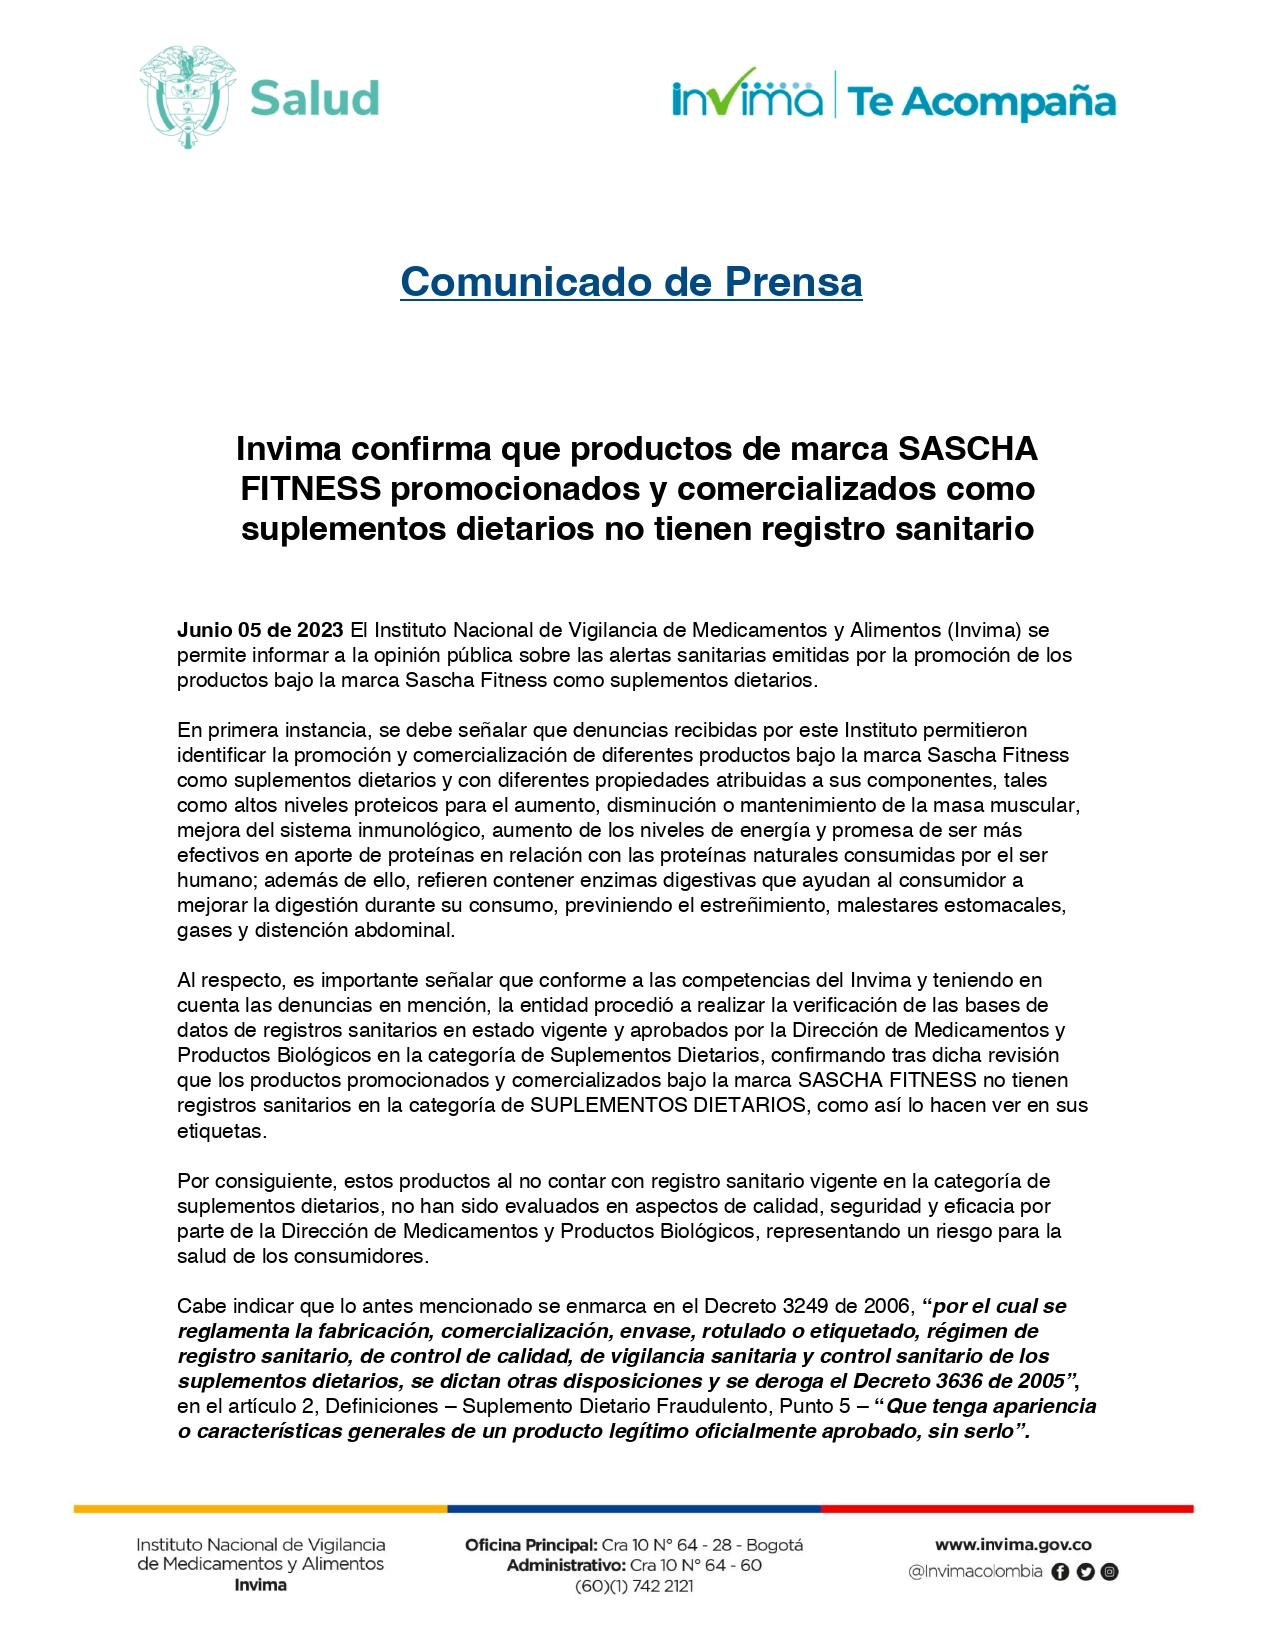 Polémica entre Sascha Fitness y el Invima: la entidad reitera que no tiene  registro sanitario para suplementos dietarios